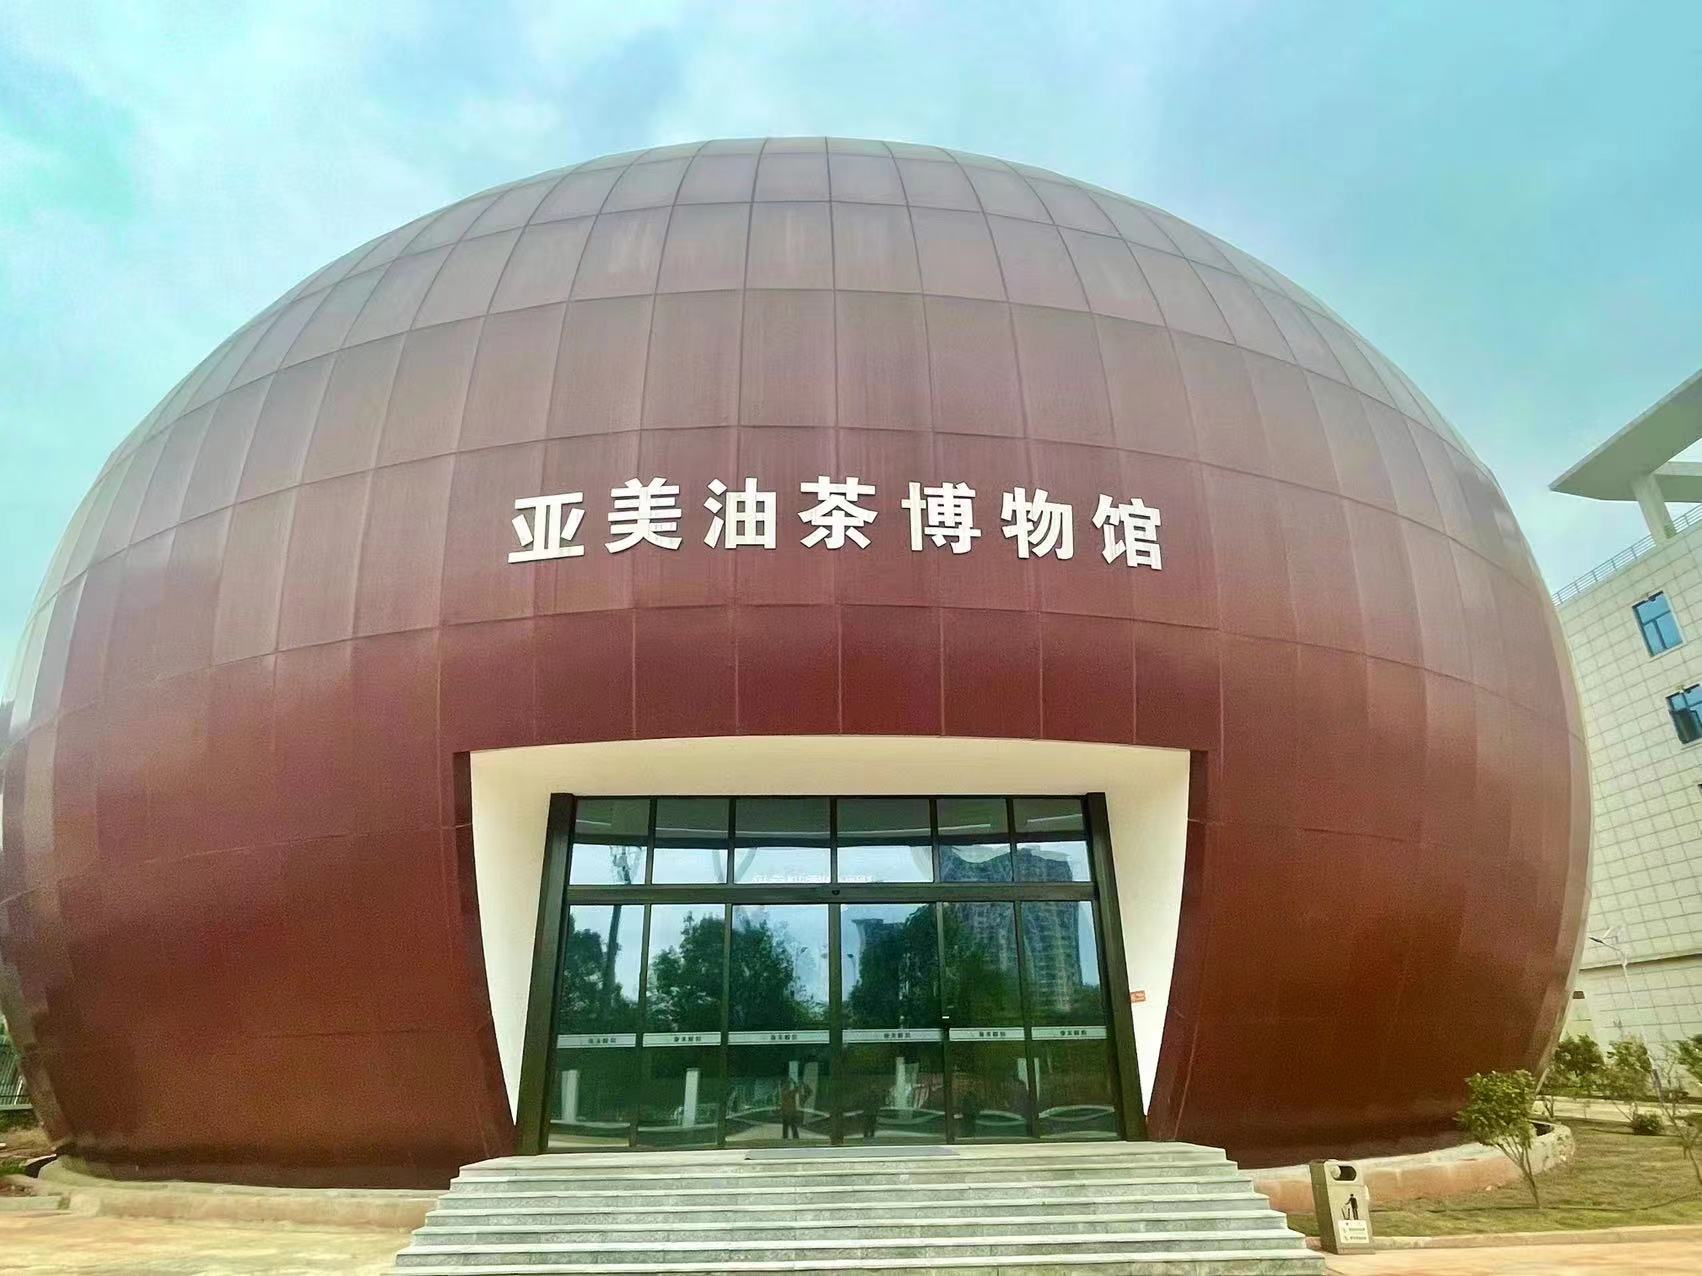 全國最大油茶果型油茶博物館在湖南攸縣開館